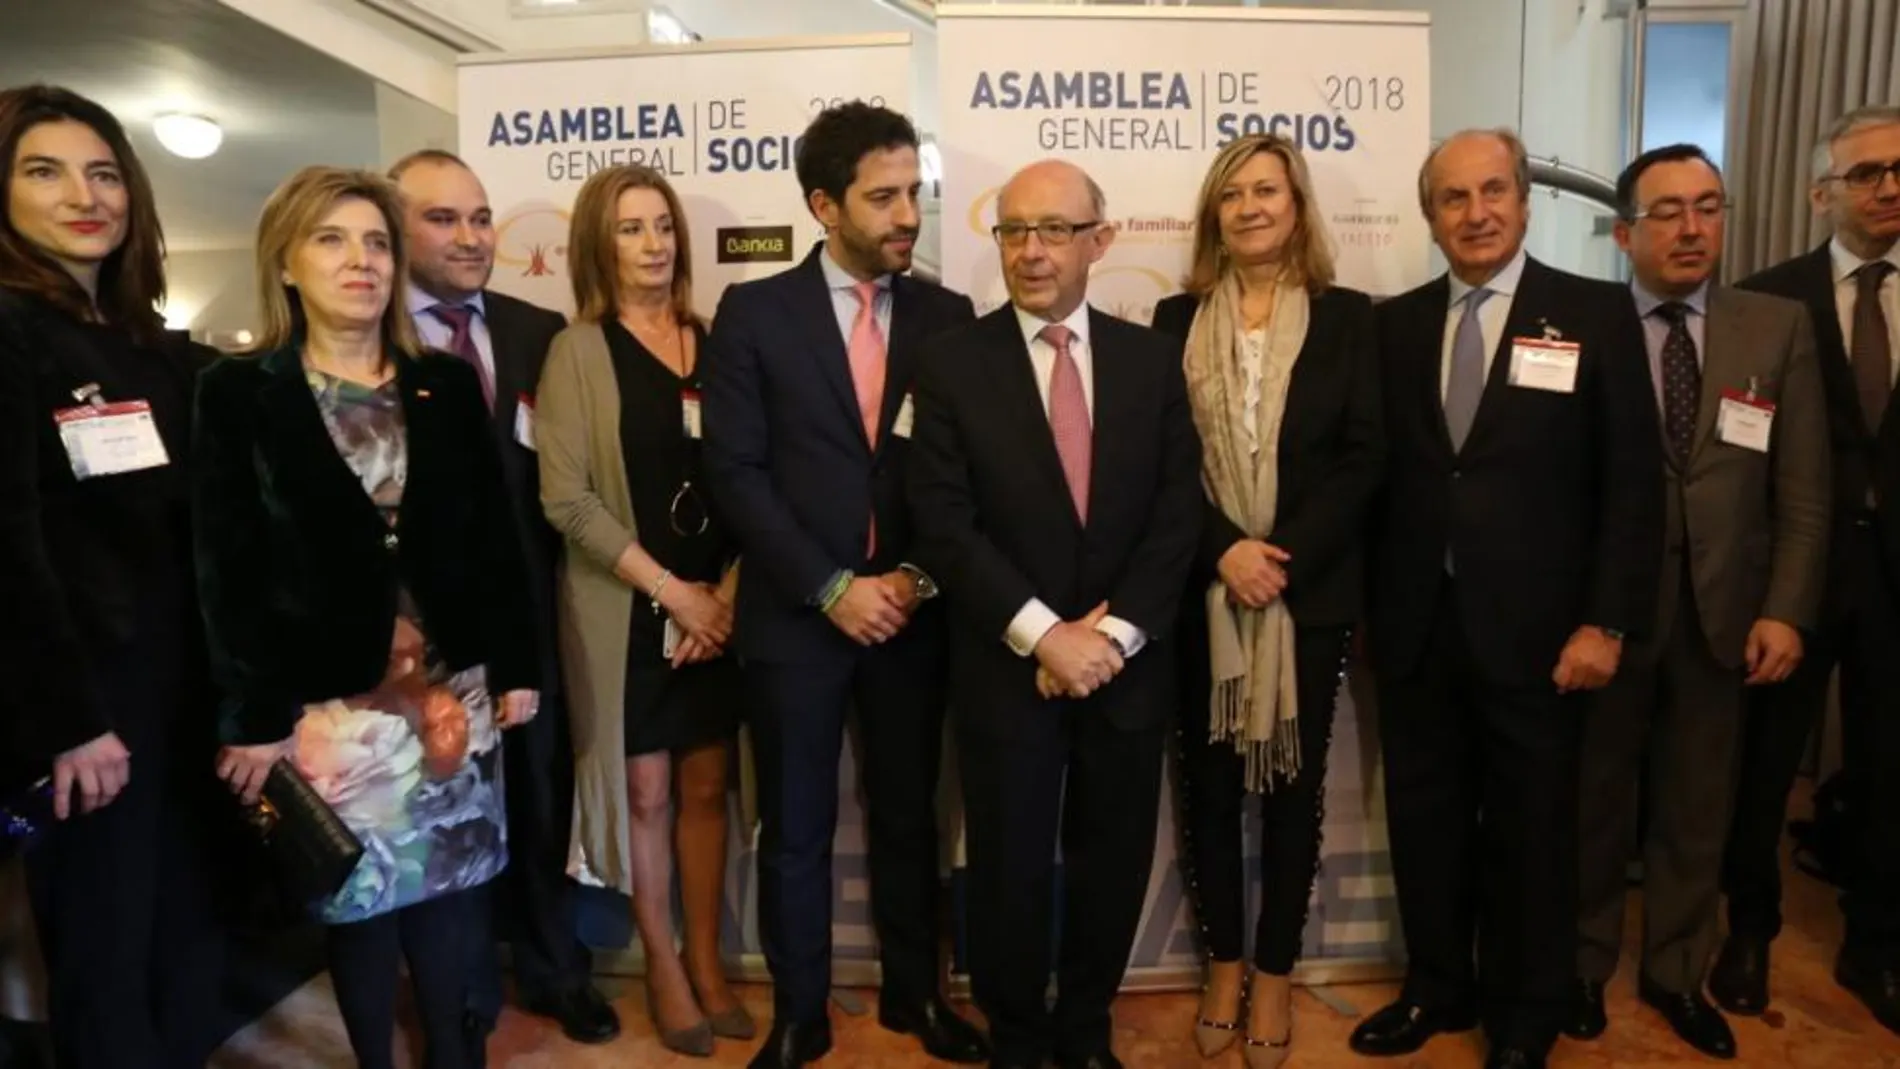 Los socios de Empresa Familiar junto al ministro Montoro, la delegada del Gobierno, María José Salgueiro y la consejera Pilar del Olmo durante la Asamblea celebrada en Segovia